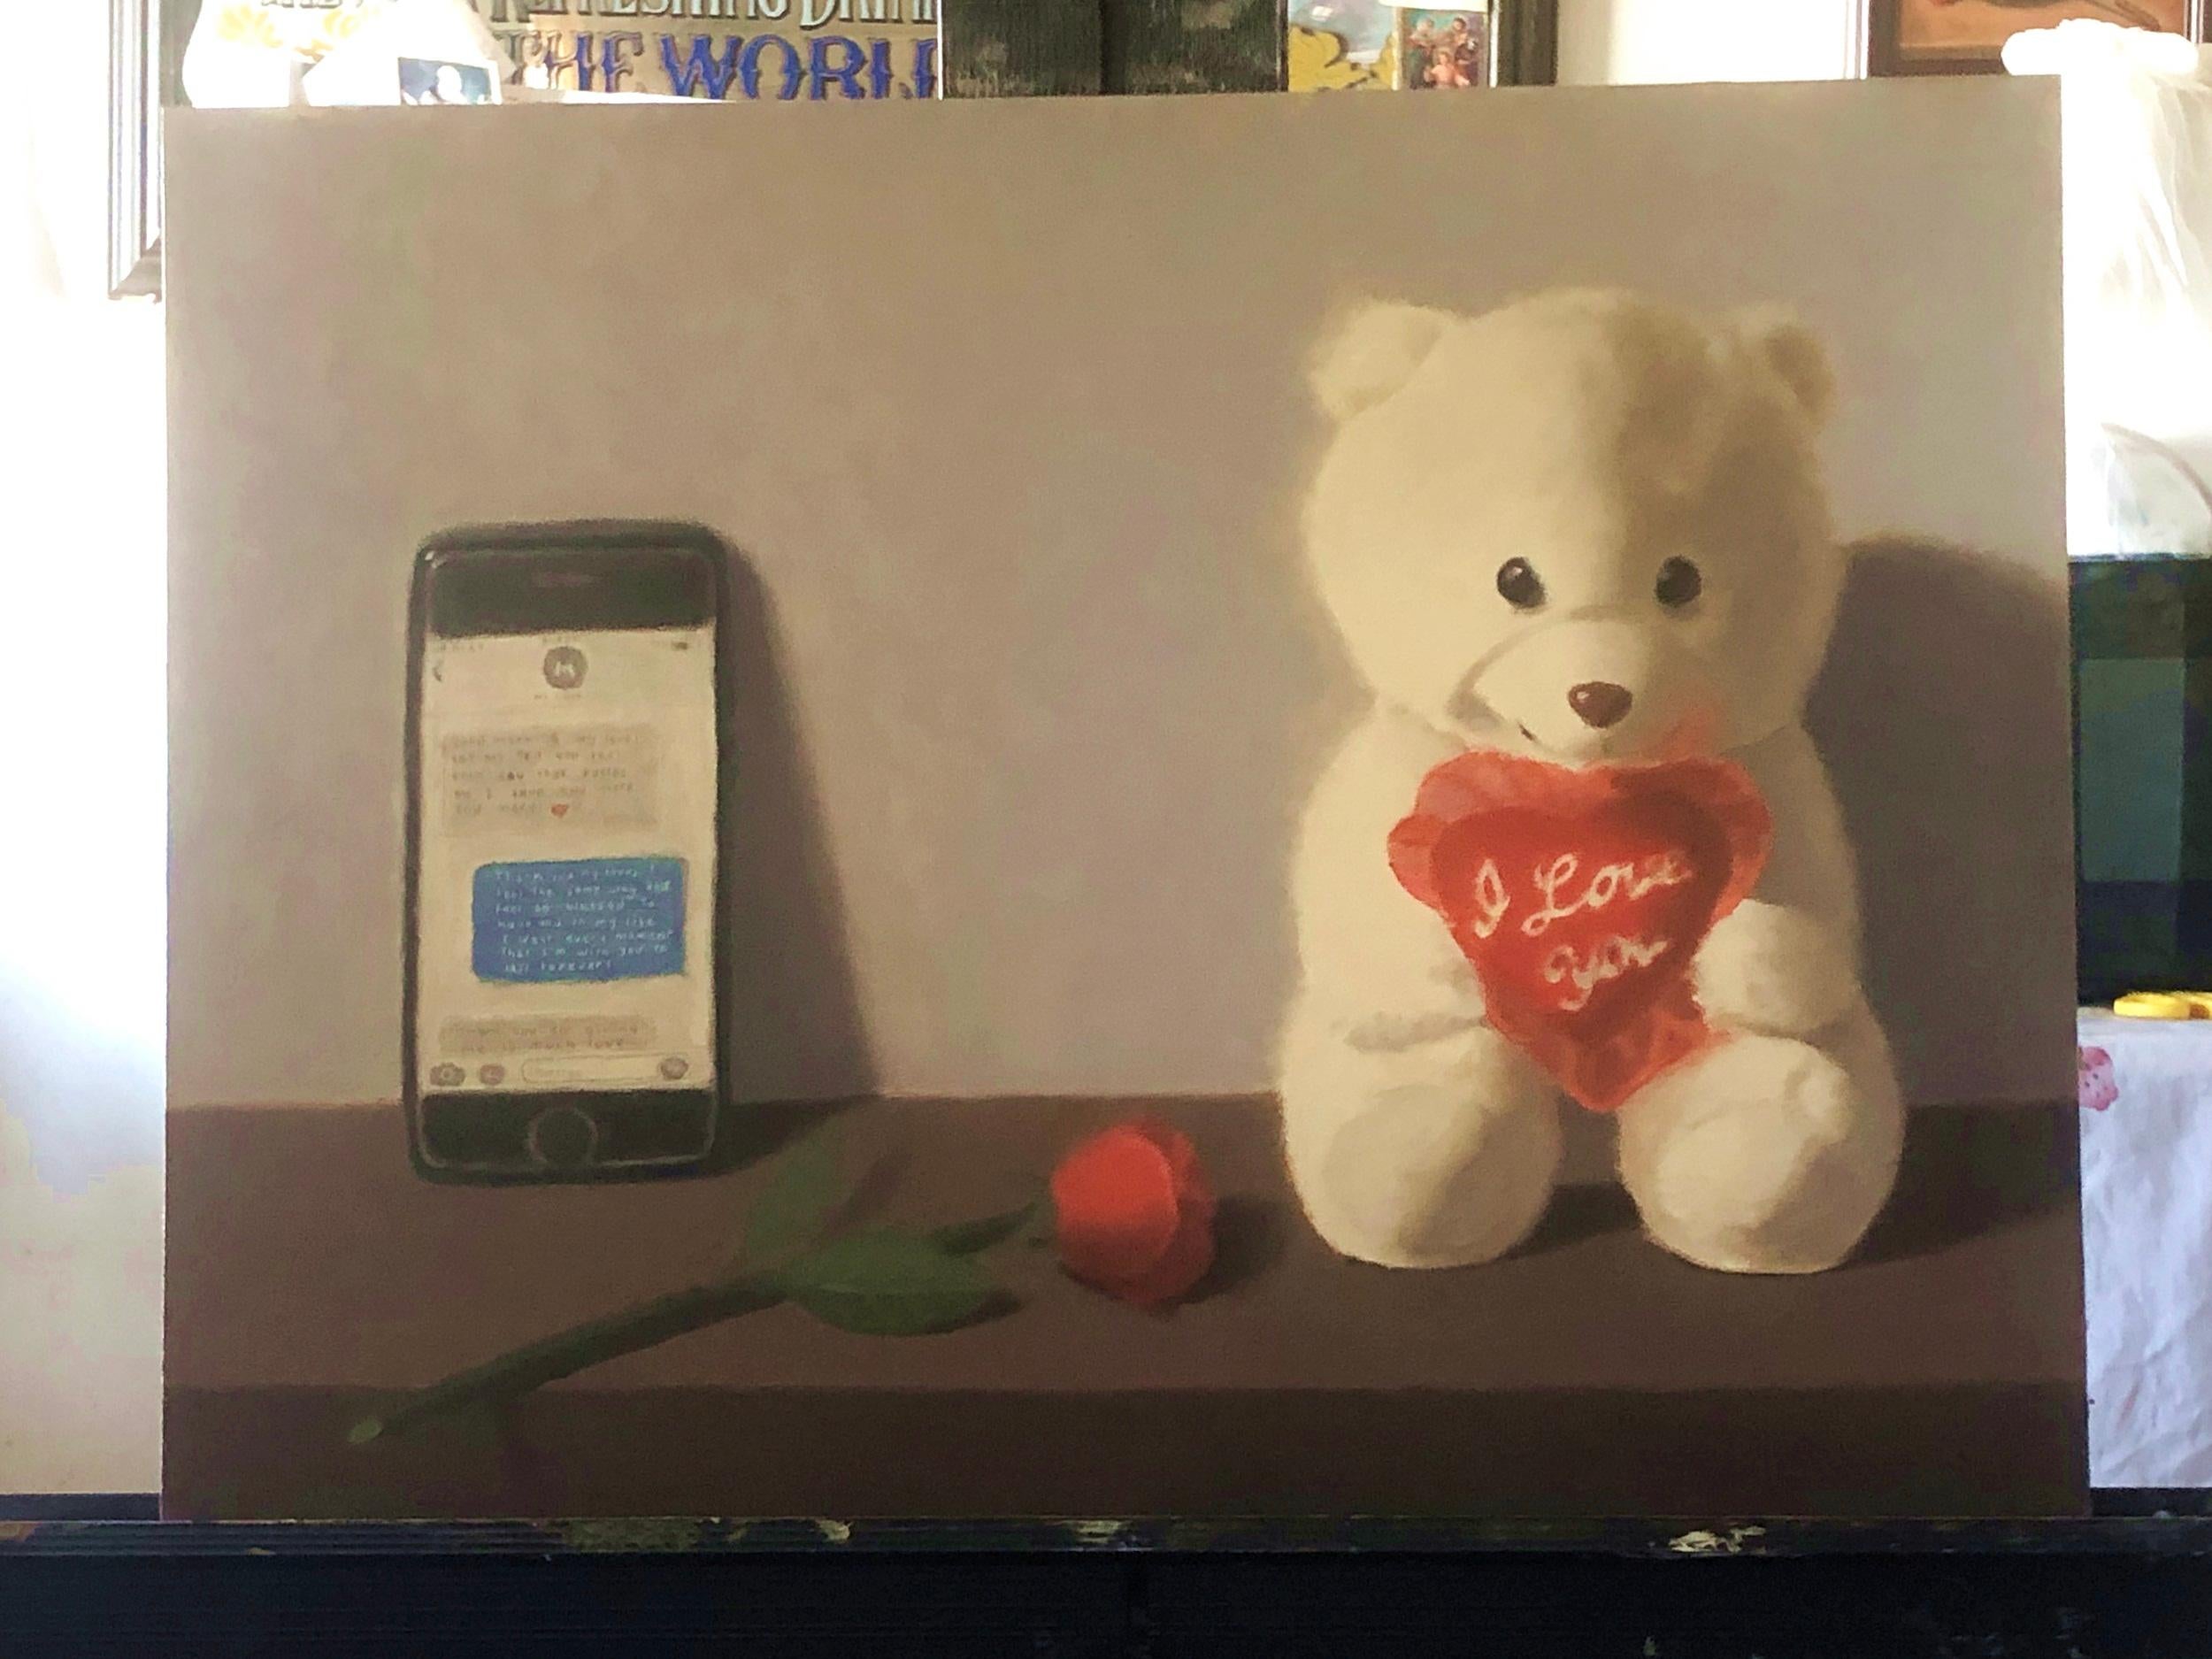 <p>Commentaires de l'artiste<br />L'artiste Jose H. Alvarenga présente une nature morte symbolique composée d'un téléphone portable, d'une rose et d'un ours en peluche tenant un cœur lacé sur lequel on peut lire 